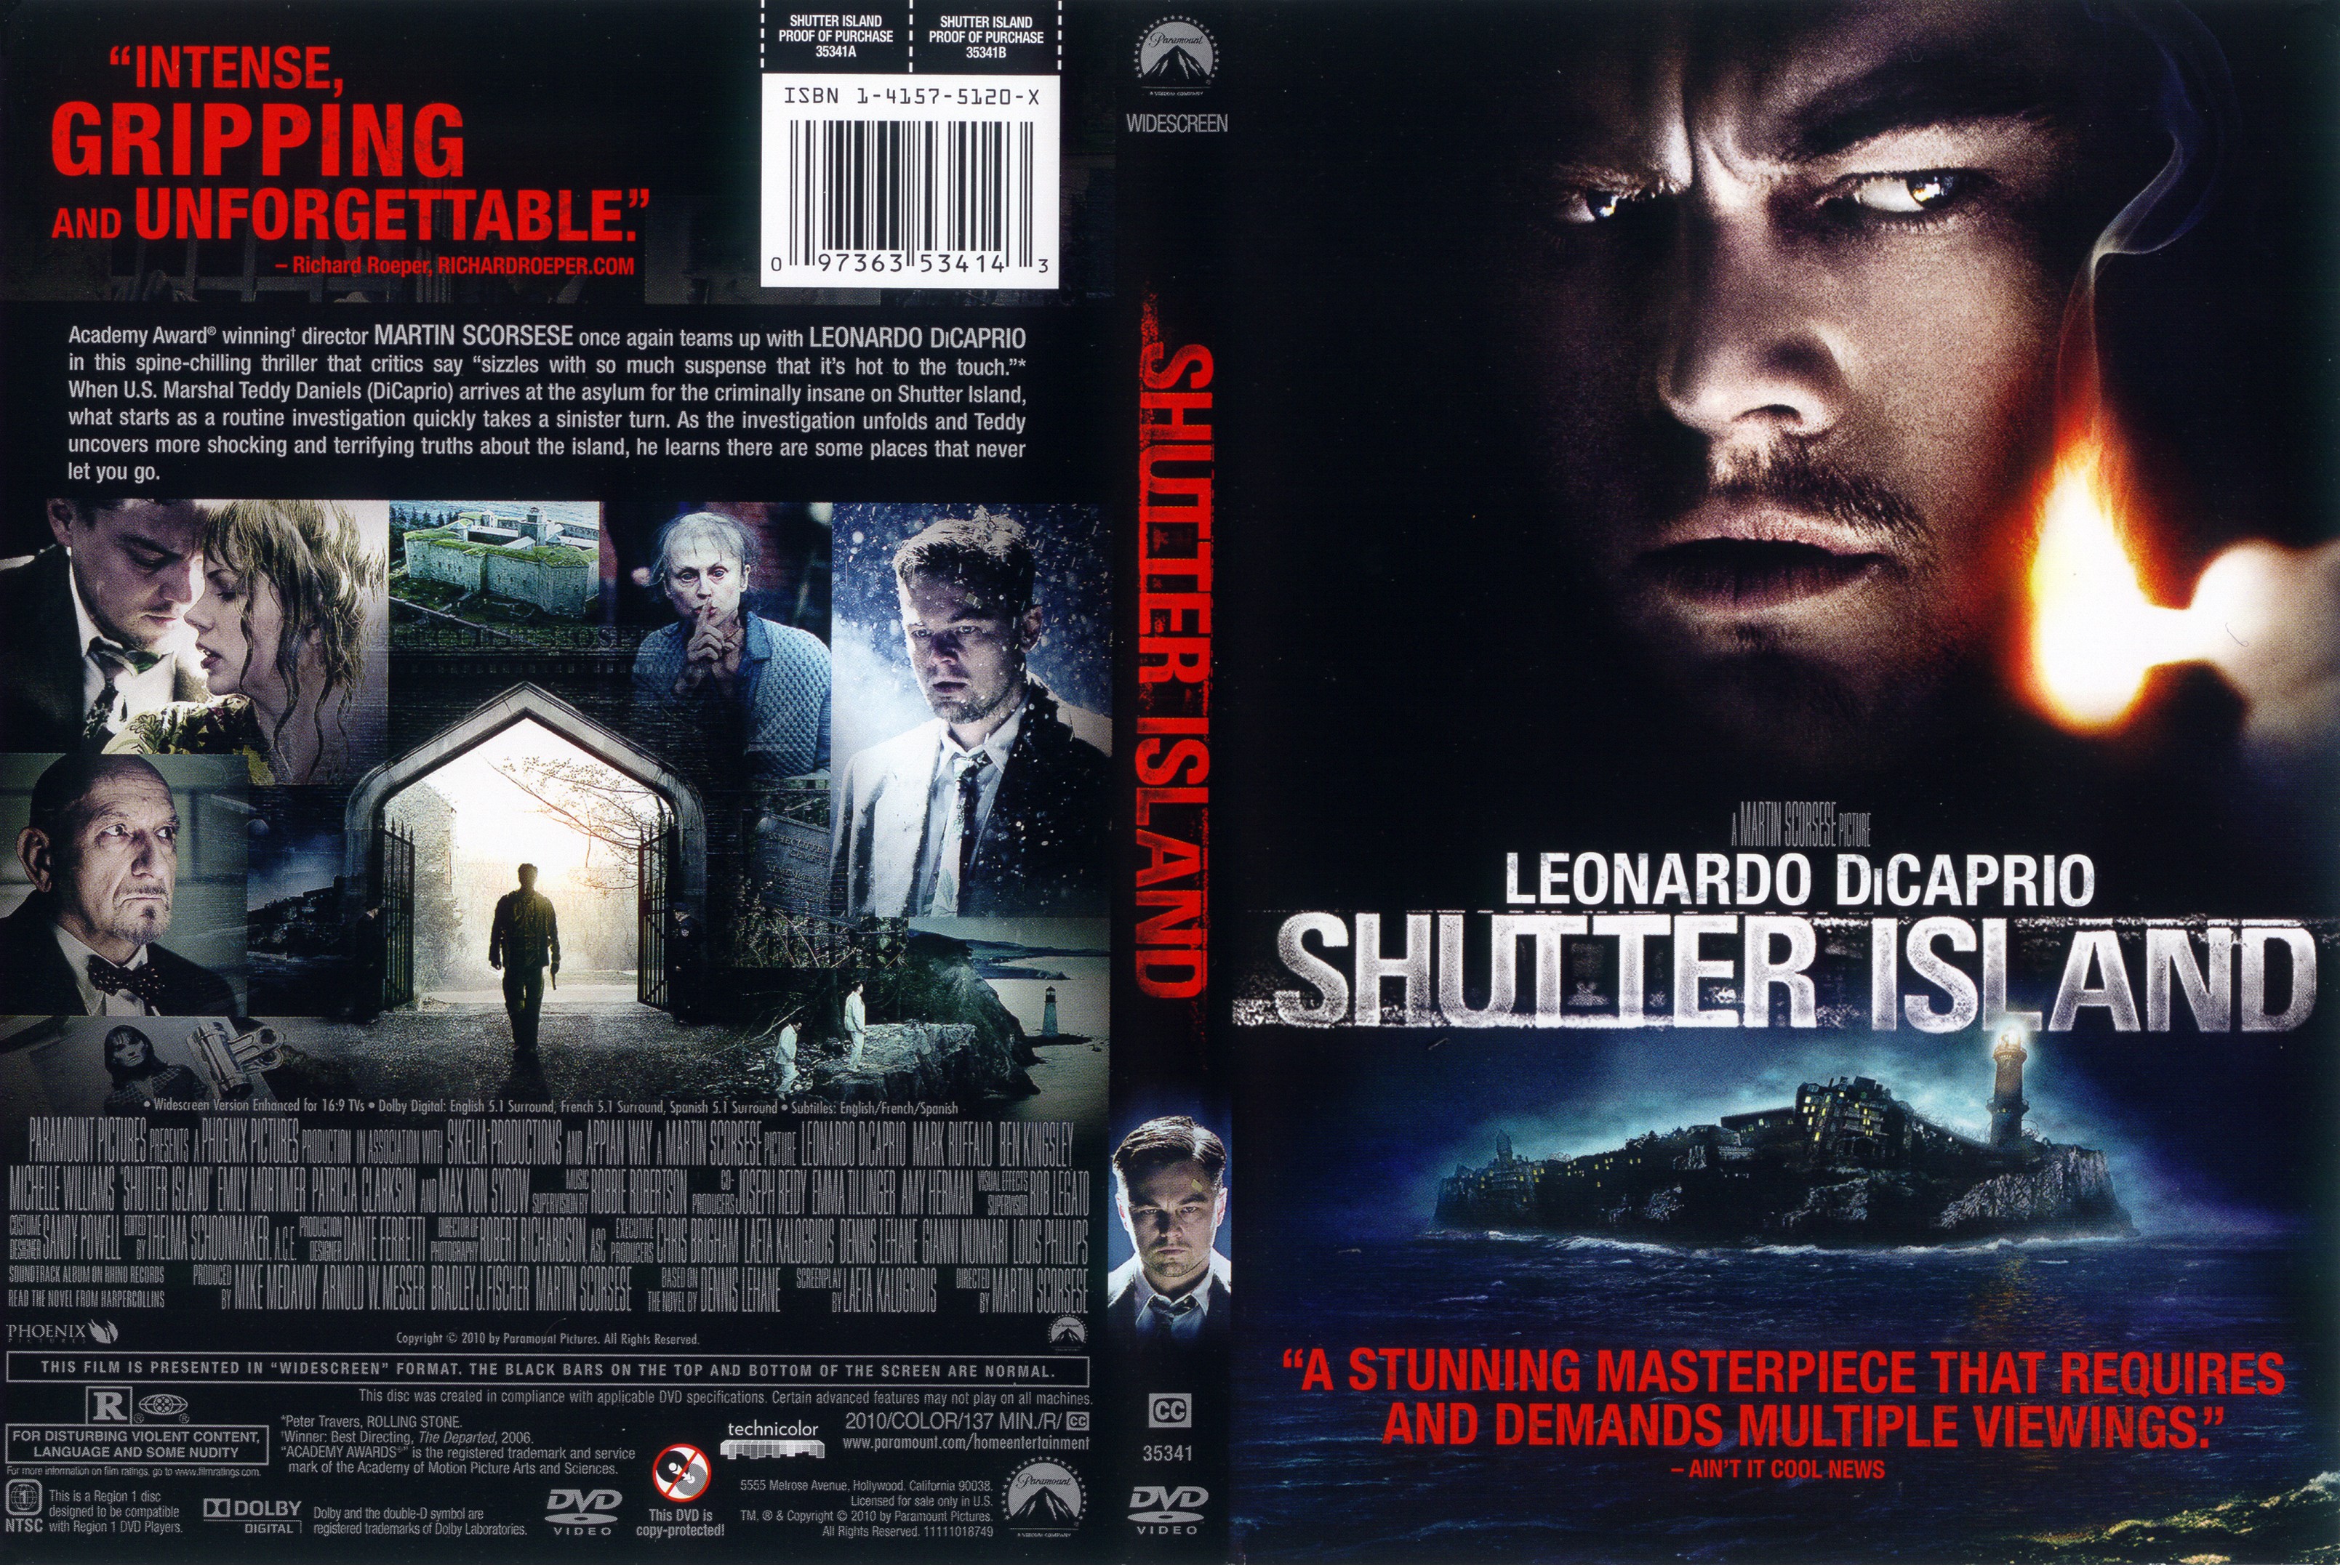 Island island 2010. Shutter Island 2010. Shutter Island DVD Cover. Скорсезе остров проклятых. Shutter Island, 2010 DVD Covers.